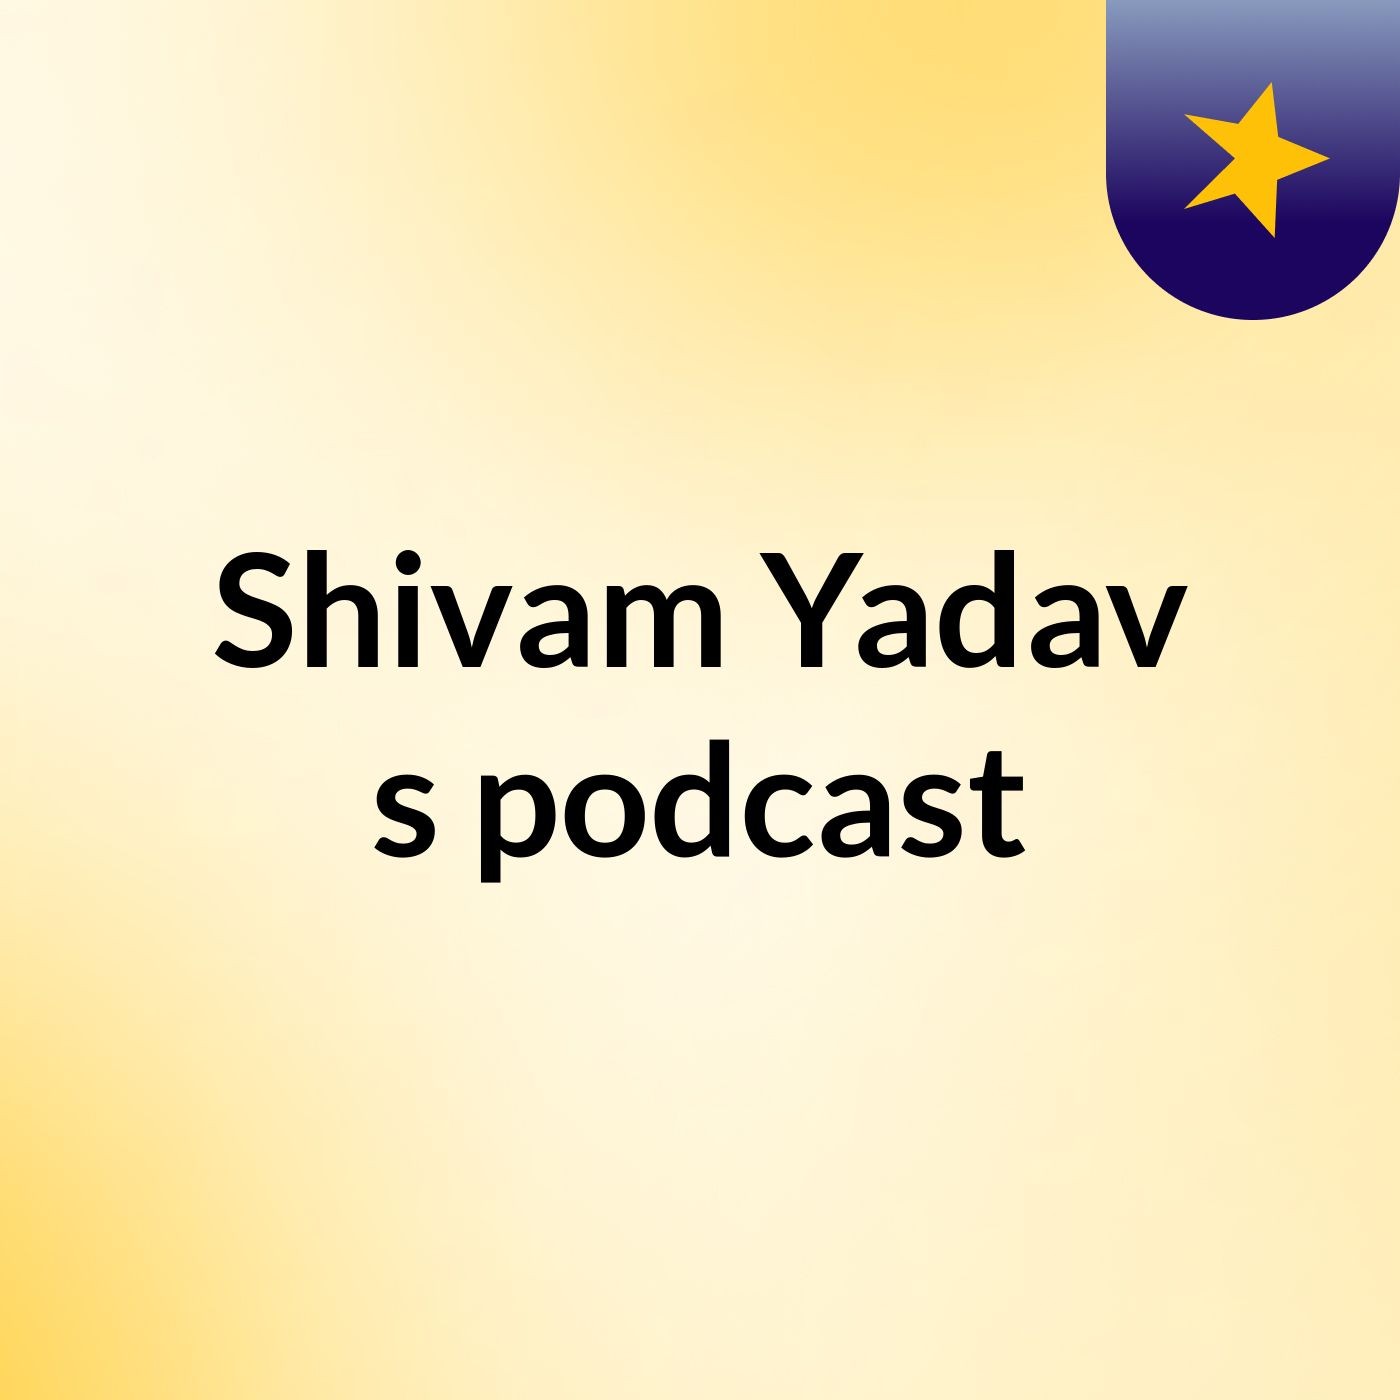 Episode 6 - Shivam Yadav's podcast